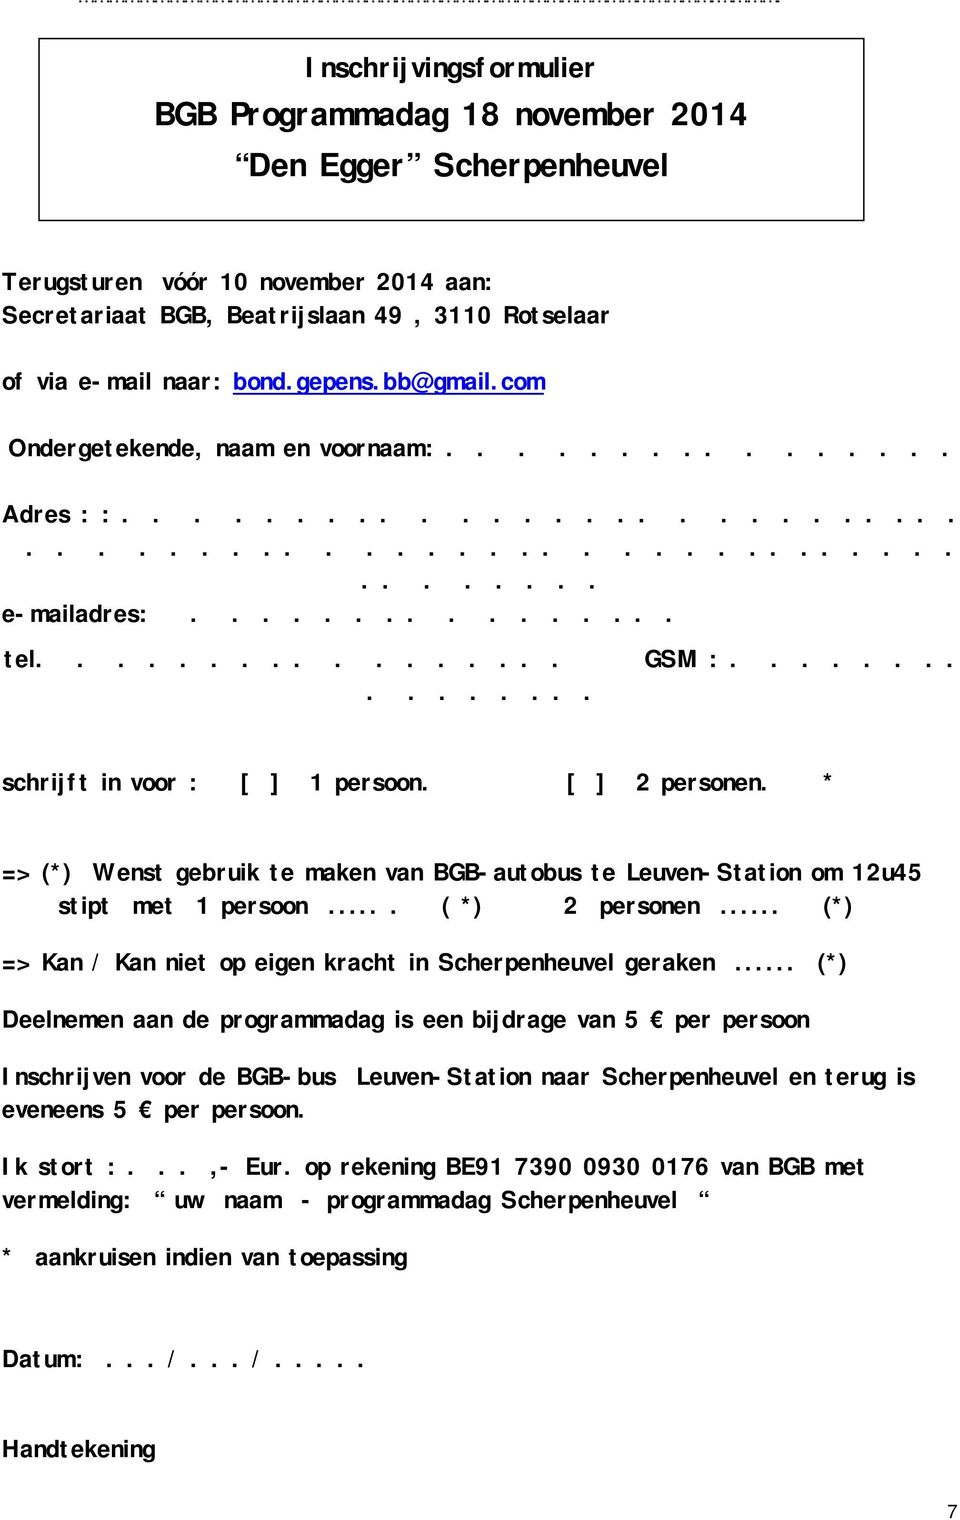 ............... schrijft in voor : [ ] 1 persoon. [ ] 2 personen. * => (*) Wenst gebruik te maken van BGB-autobus te Leuven-Station om 12u45 stipt met 1 persoon.... ( *) 2 personen.